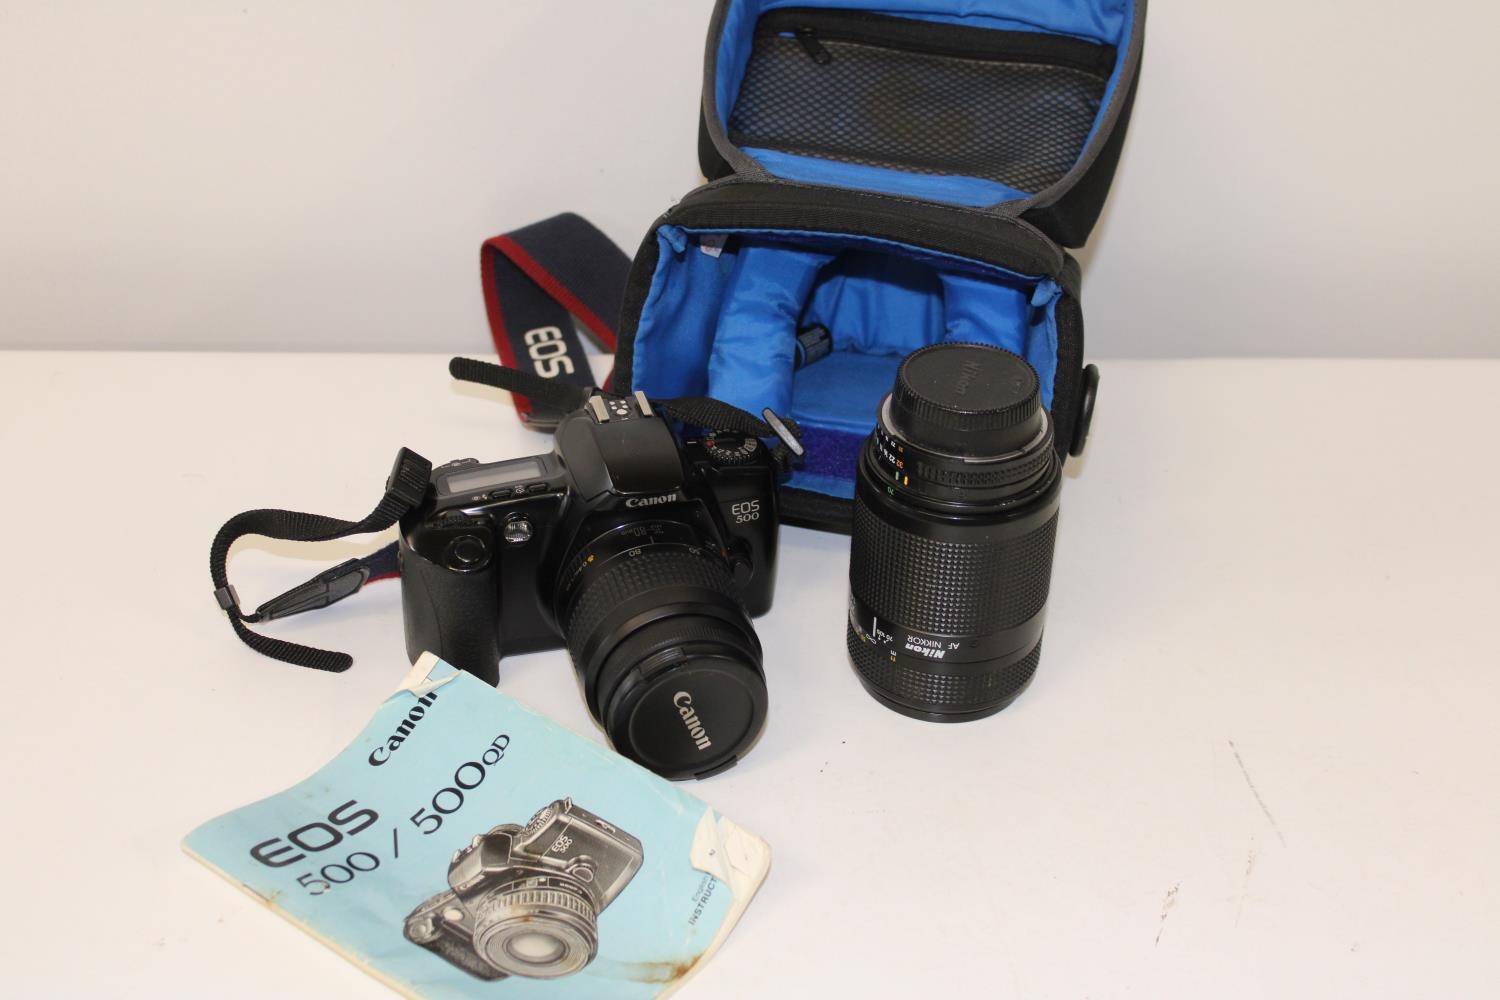 A Canon EOS 500 camera & lens with a Nikon Nikkor camera lens